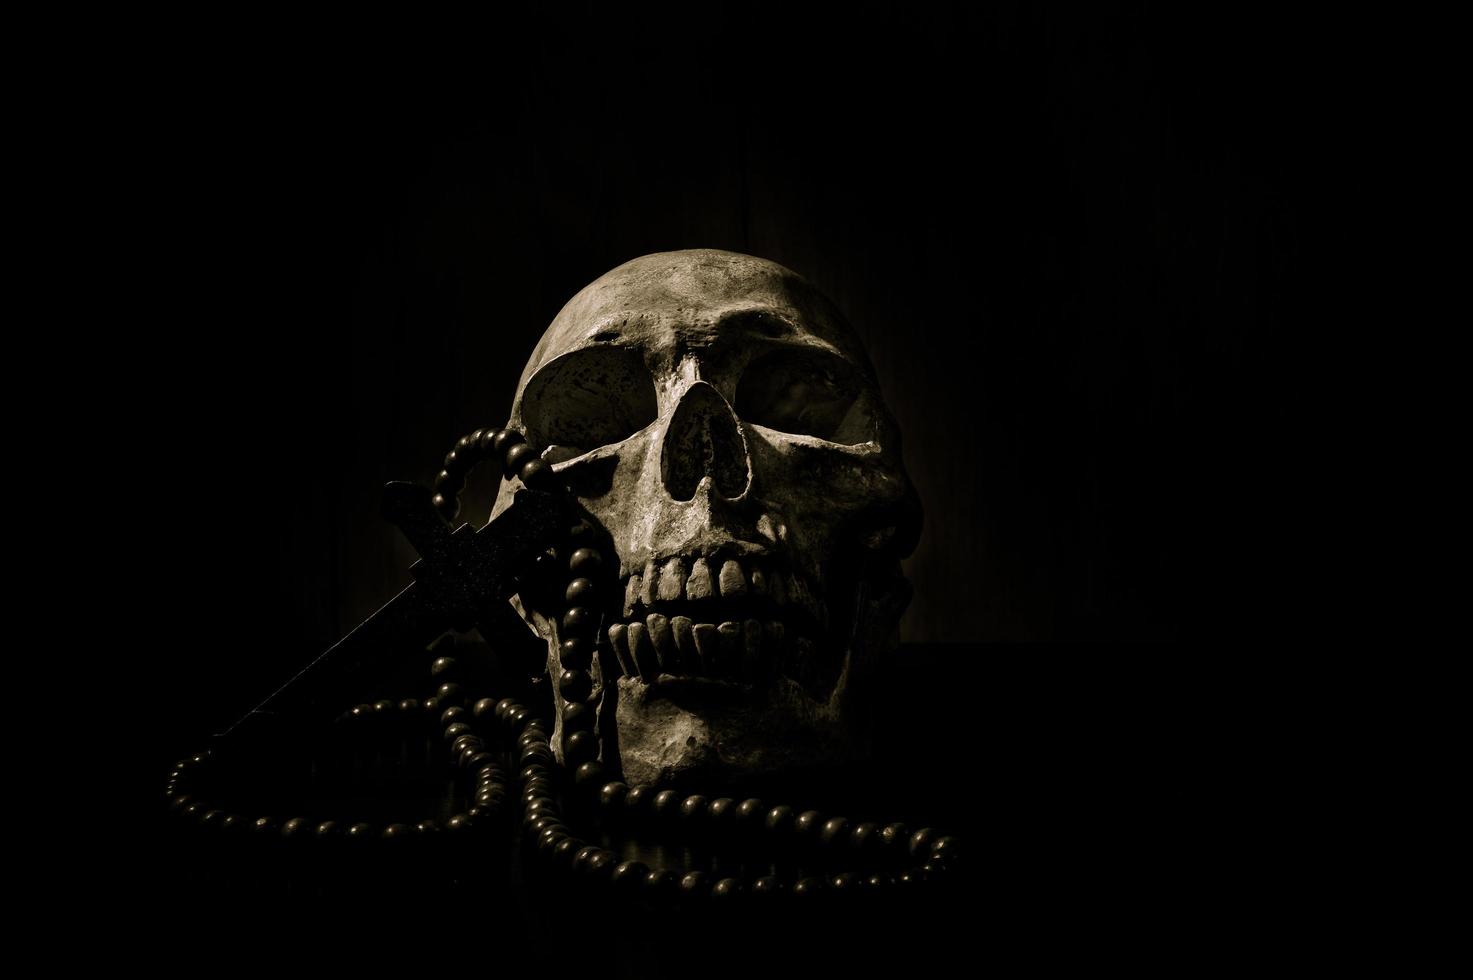 Bodegón arte de un cráneo humano y cordón sobre un fondo negro foto